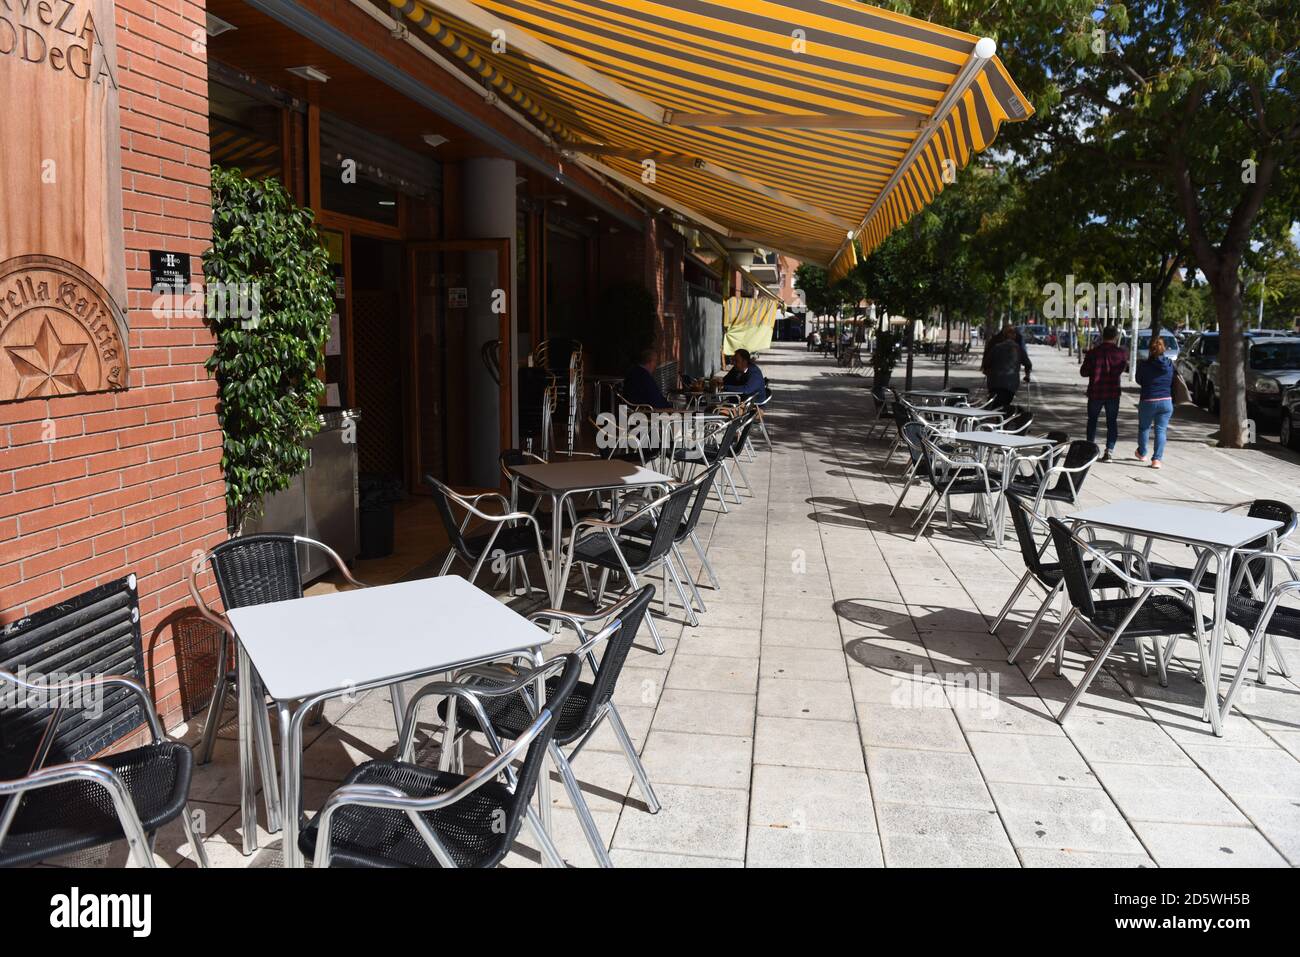 Ein Barrestaurant mit leeren Stühlen in Barcelona.die katalanische Regierung schließt Restaurants und Bars für zwei Wochen, um die Mobilität und soziale Interaktion in der nordöstlichen spanischen Region zu verringern, um die Eskalation der COVID-19-Fälle anzugehen. Stockfoto